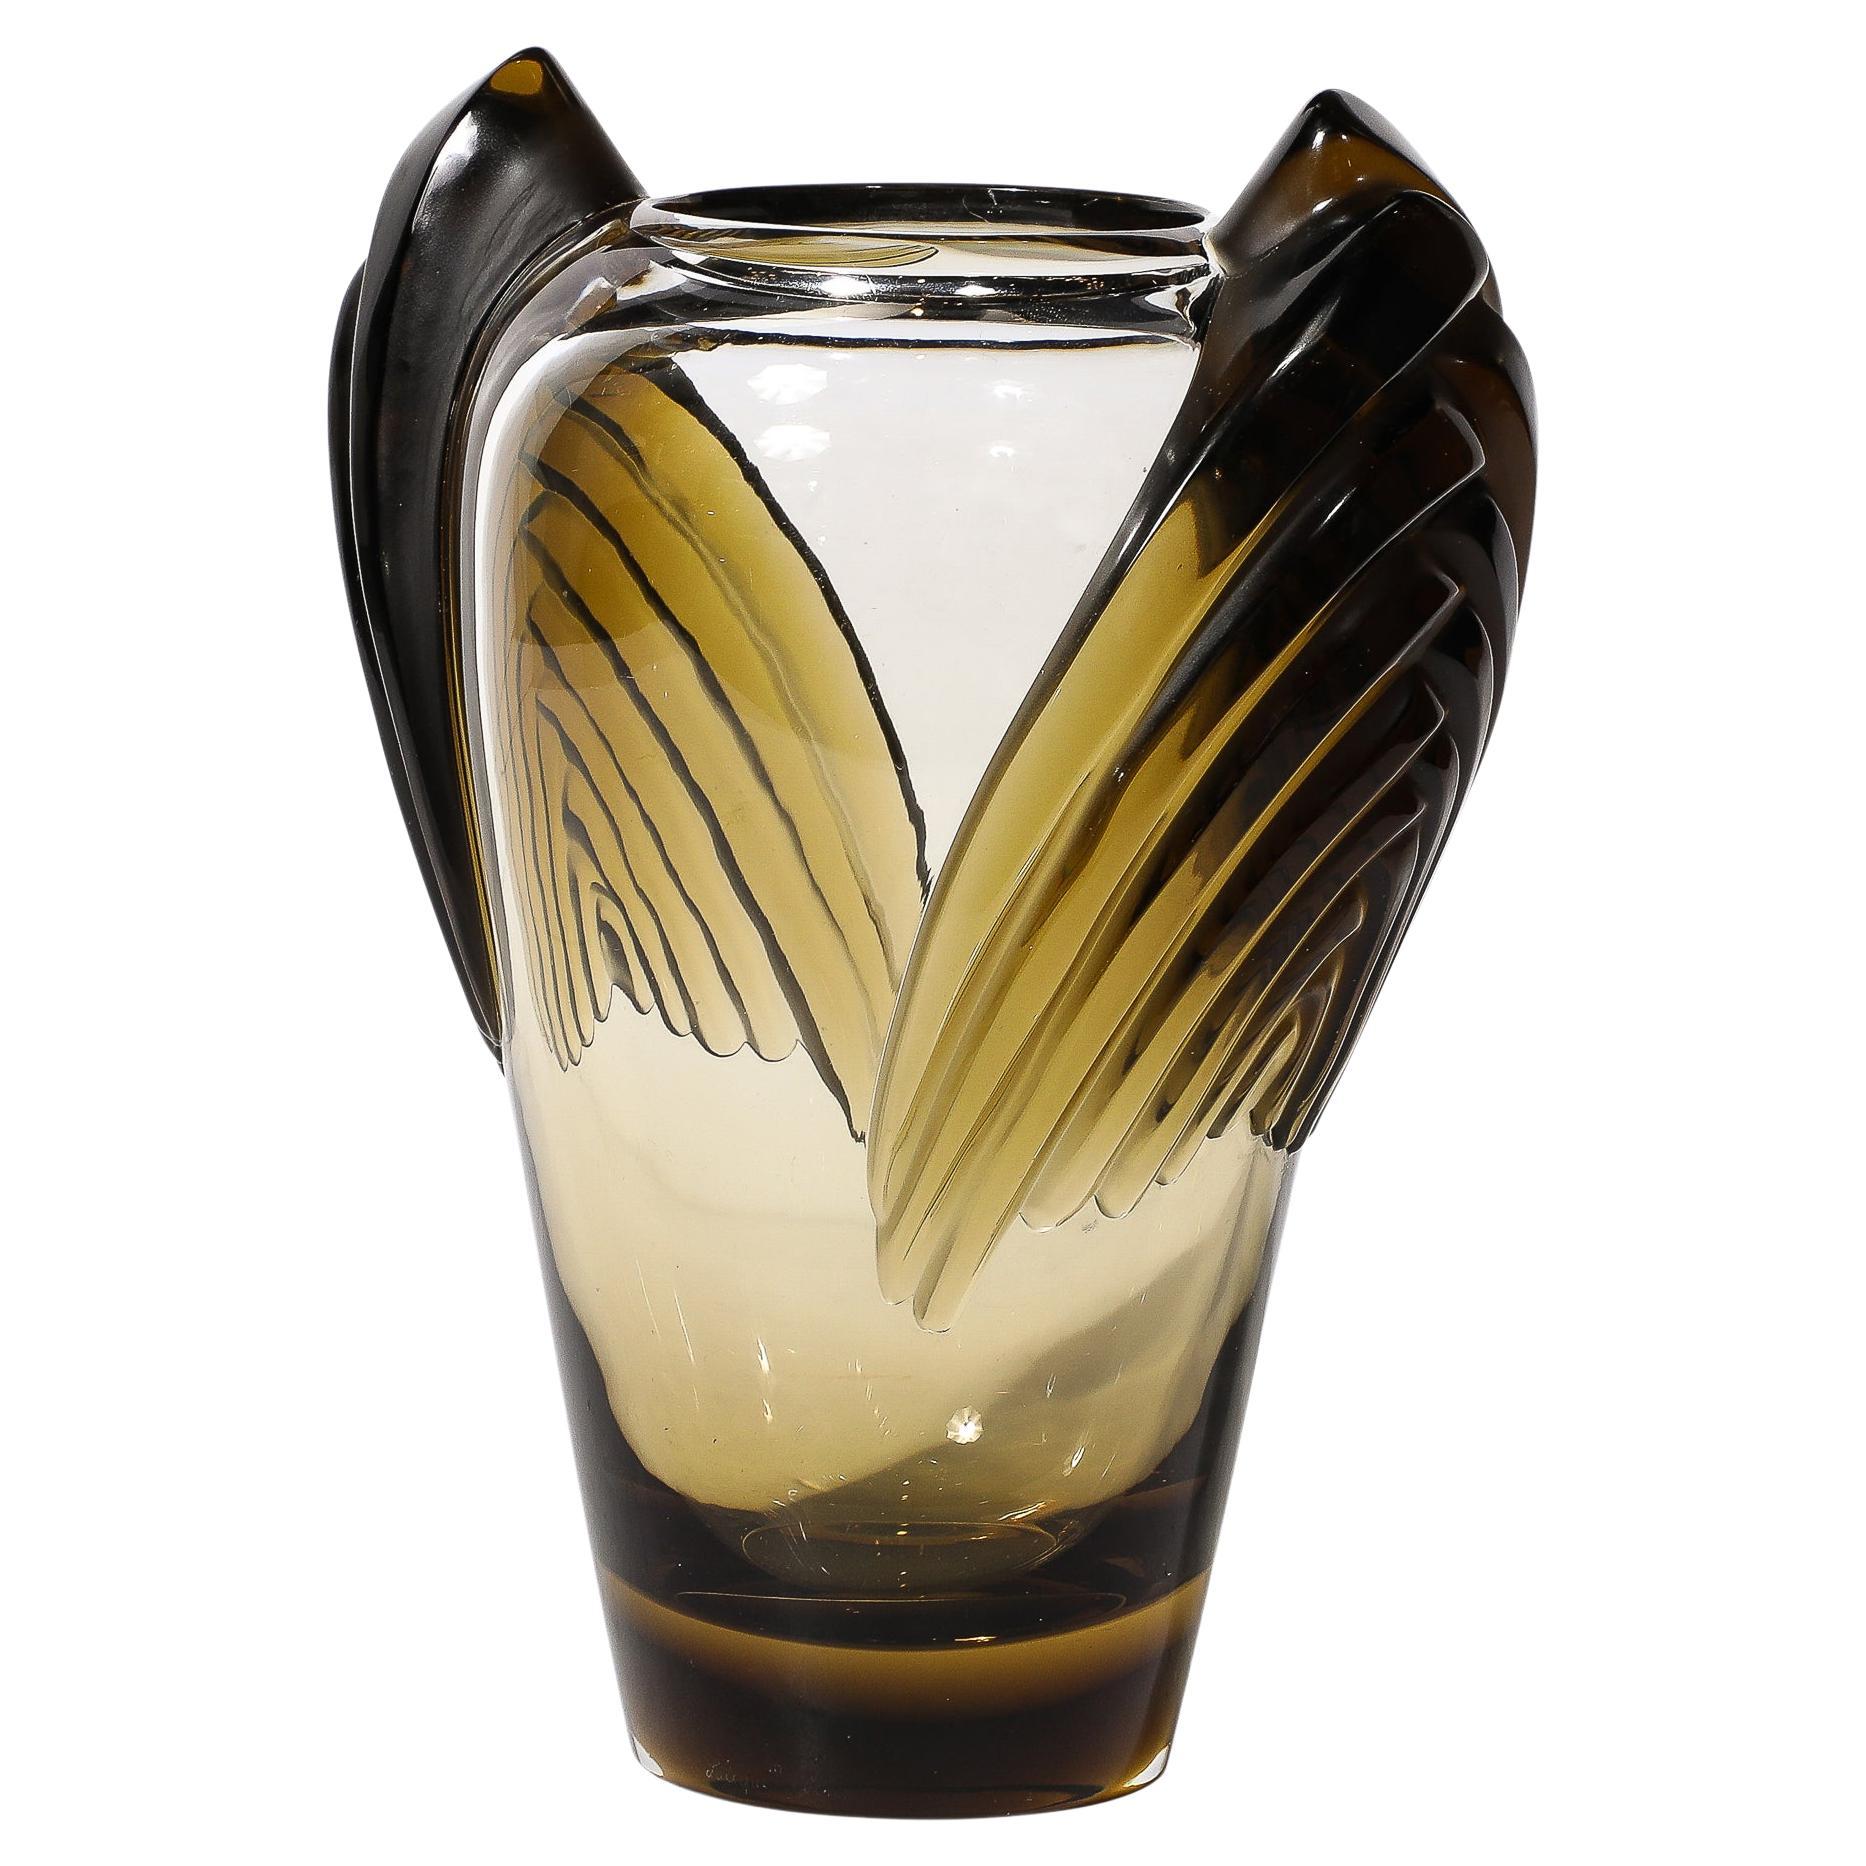 Vase de Marrakech de style Art déco signé Lalique